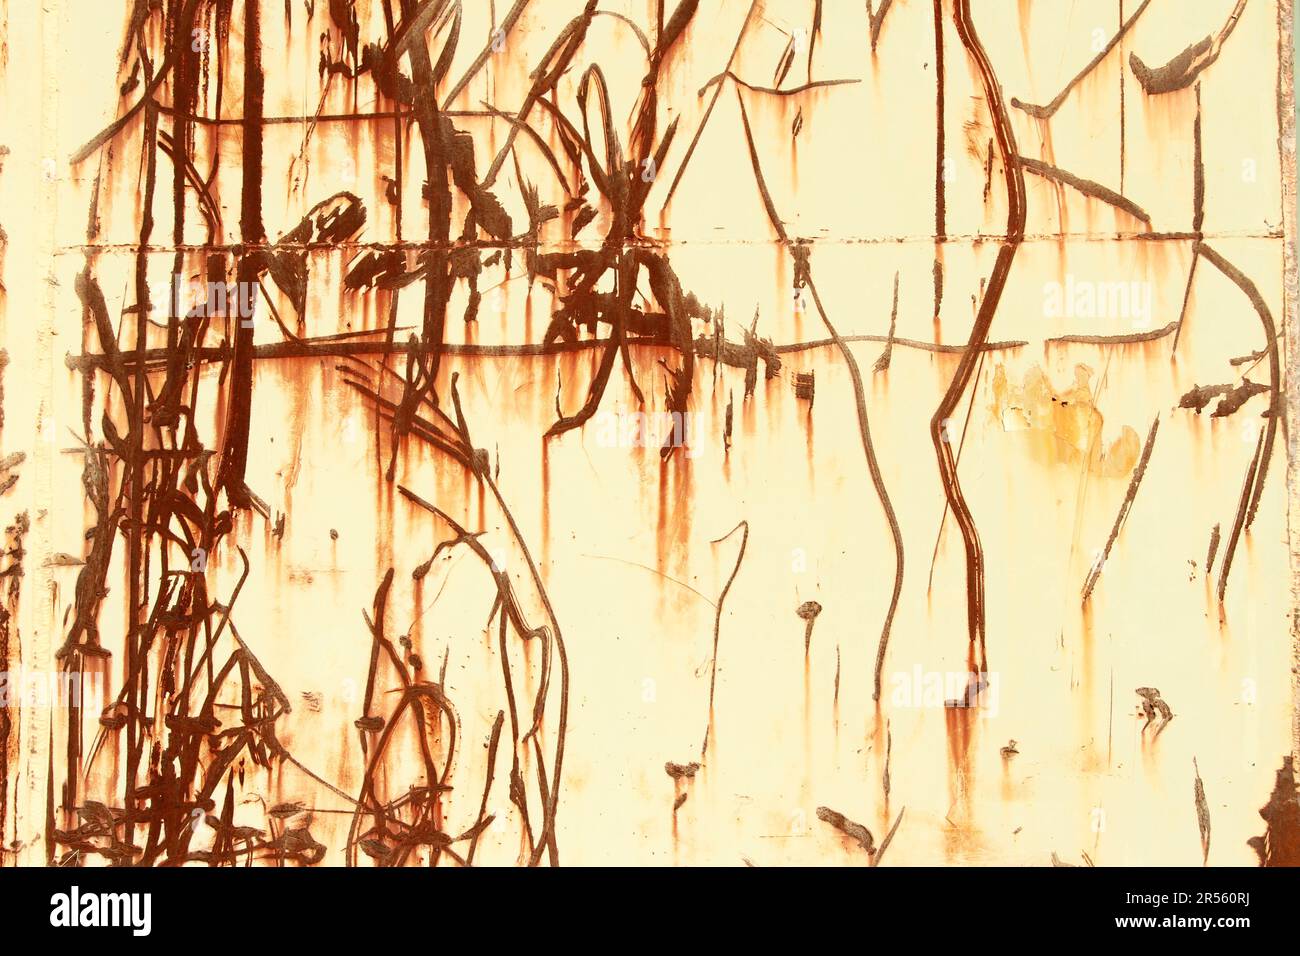 Une abstraction marron rouge de lignes et textures rouillées rayées sur une surface industrielle en métal patiné. Marques d'impact aléatoires sur un mur en acier. Apparence Banque D'Images